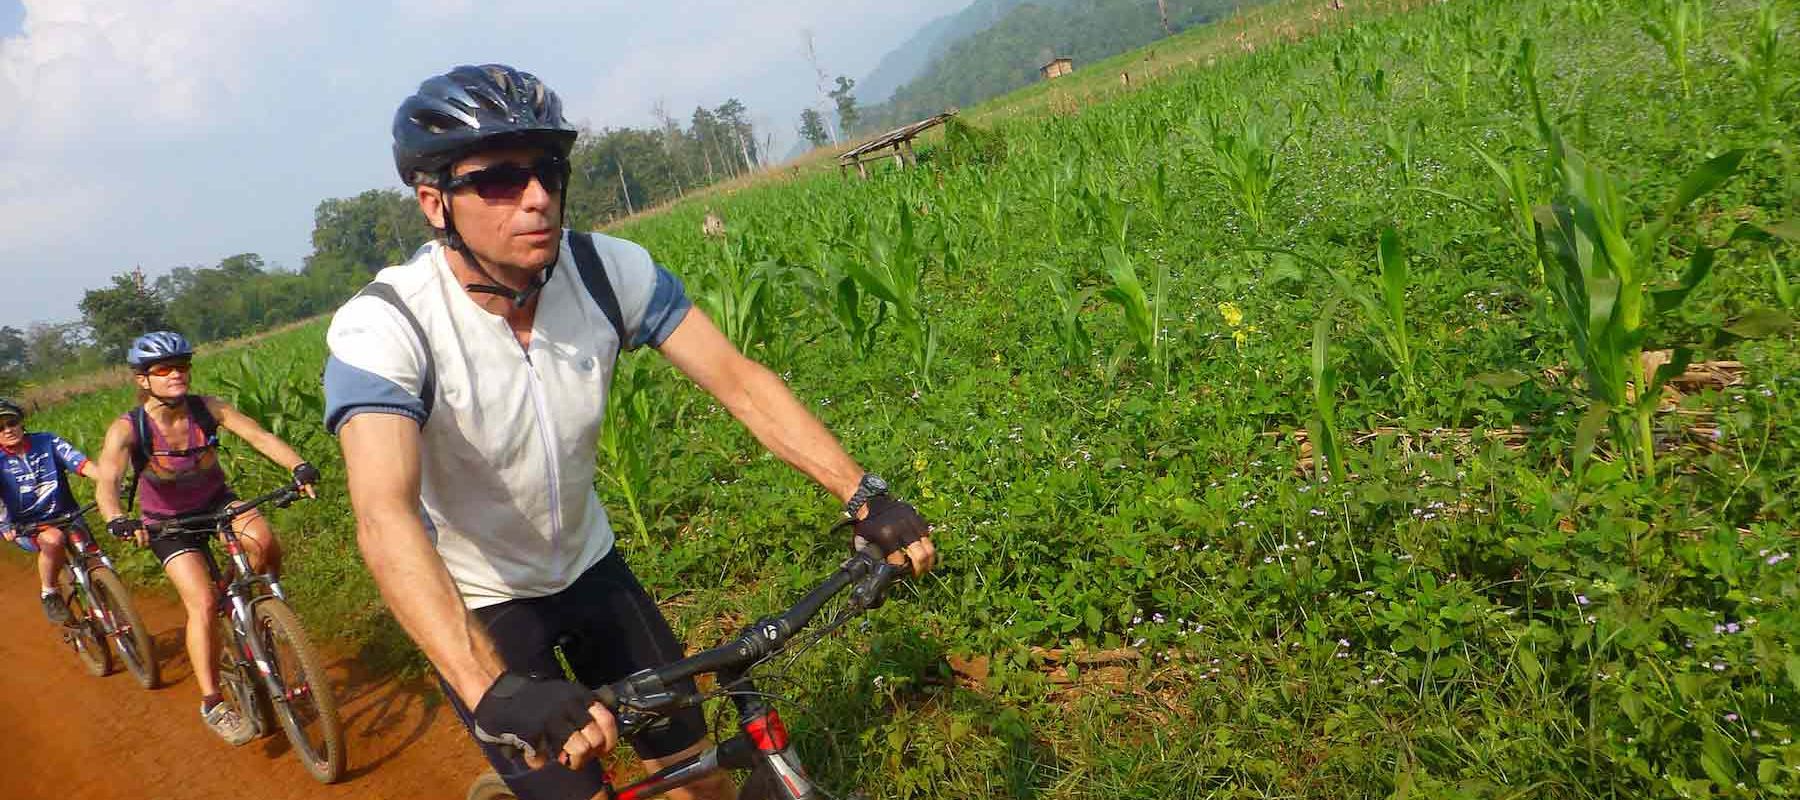 Biking Chiang Mai dirt roads